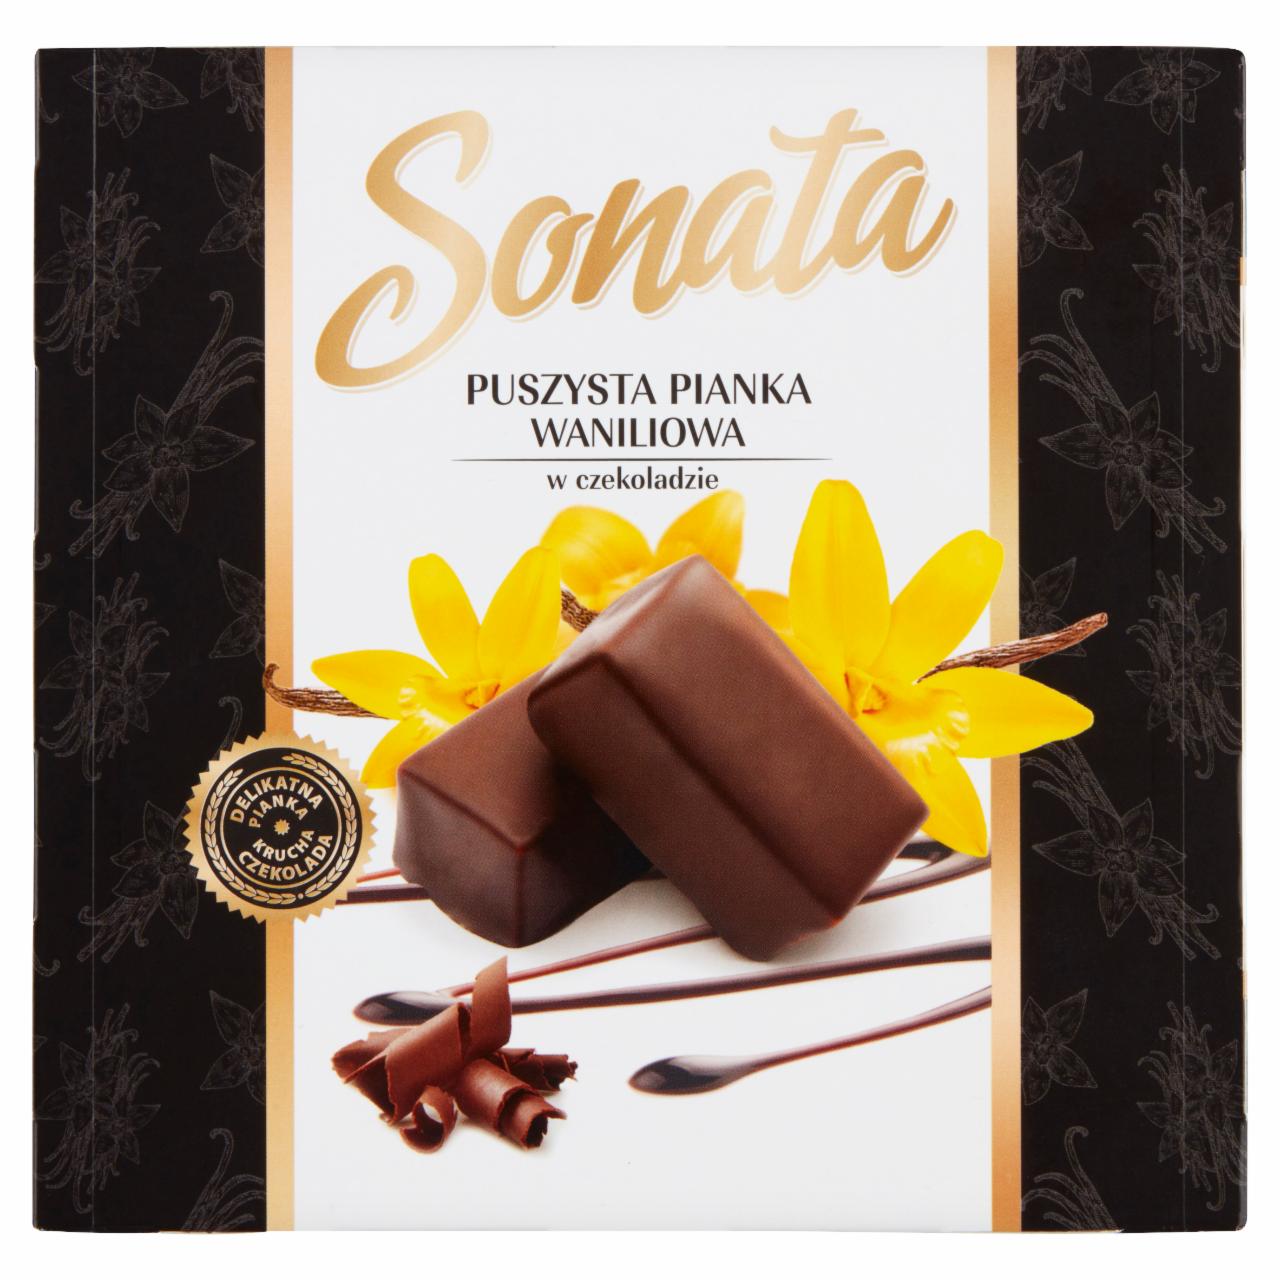 Zdjęcia - Sonata Puszysta pianka waniliowa w czekoladzie 380 g 